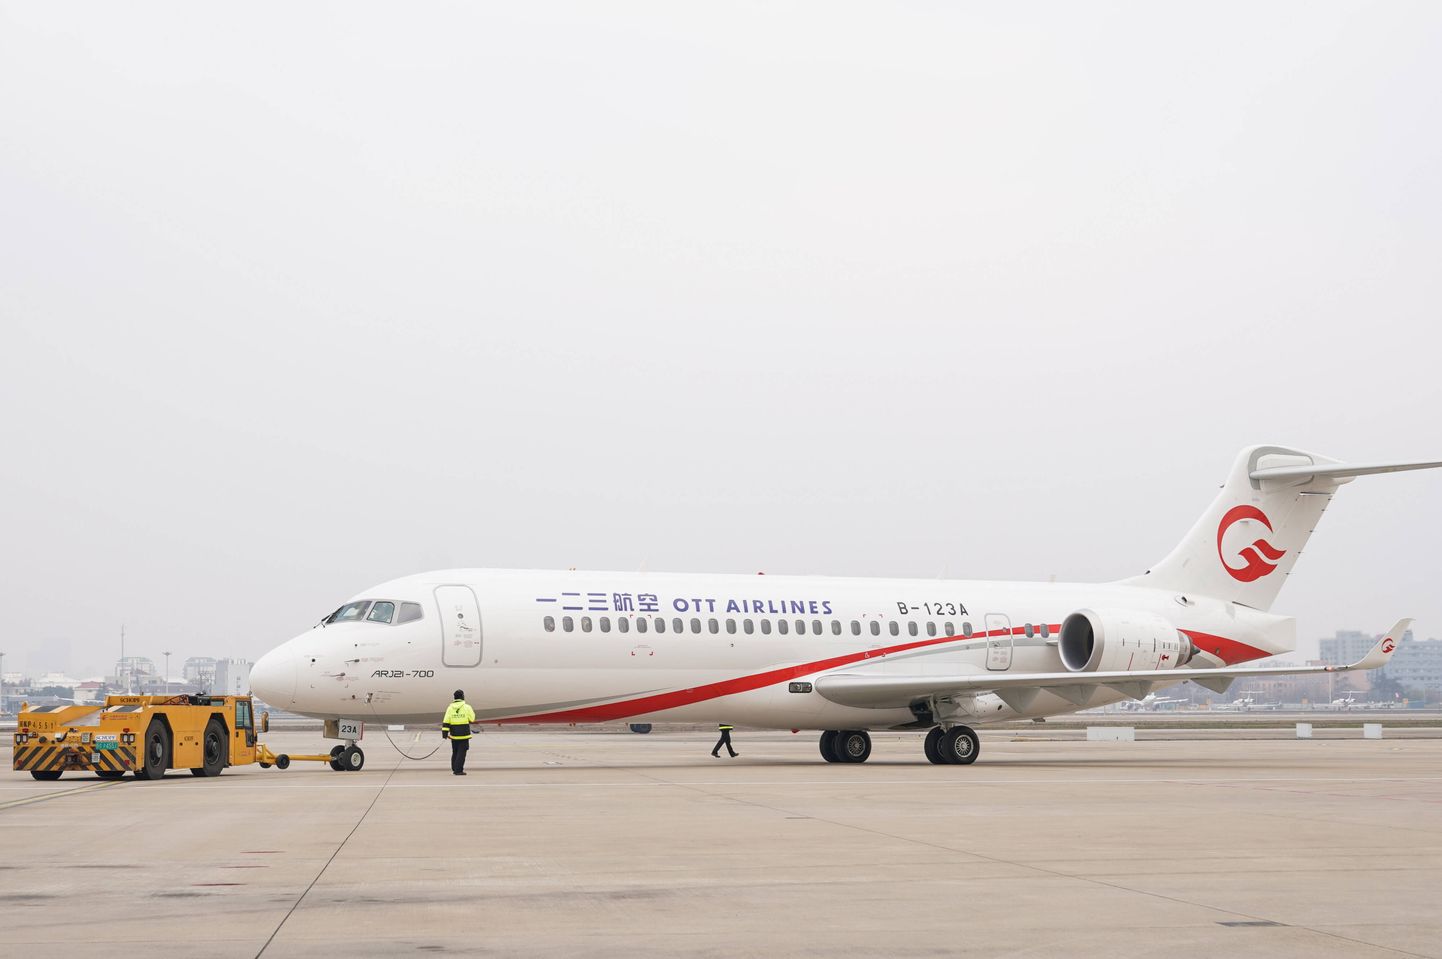 Riigifirma COMAC (Commercial Aircraft Corp.) lennuk ARJ21 Shanghai Hongqiao lennuväljal.